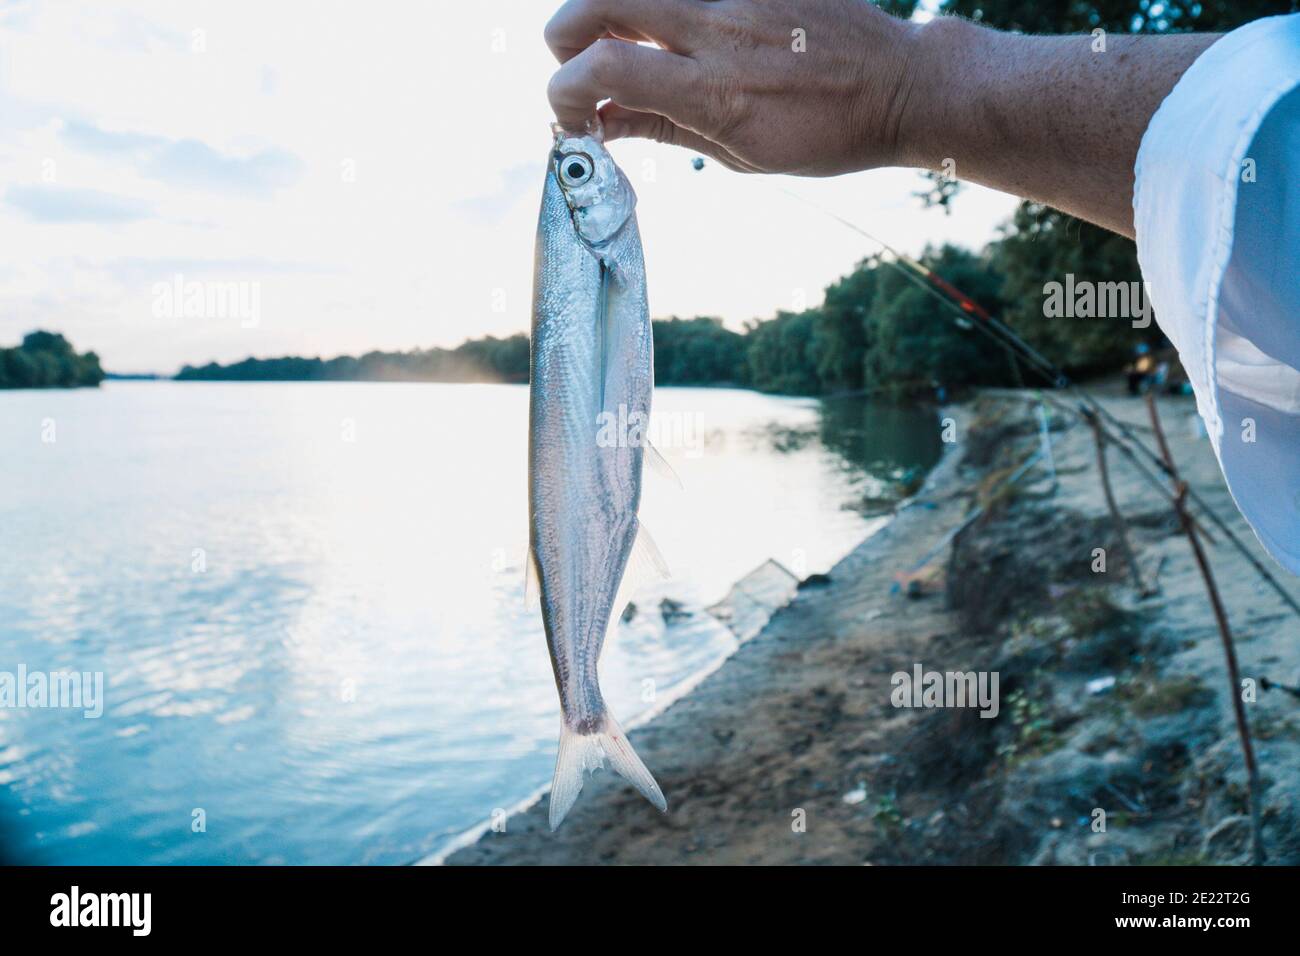 Der Fischer fing einen Fisch auf dem Fluss mit einer Angelrute. Fisch in der Hand des Fischers. Stockfoto